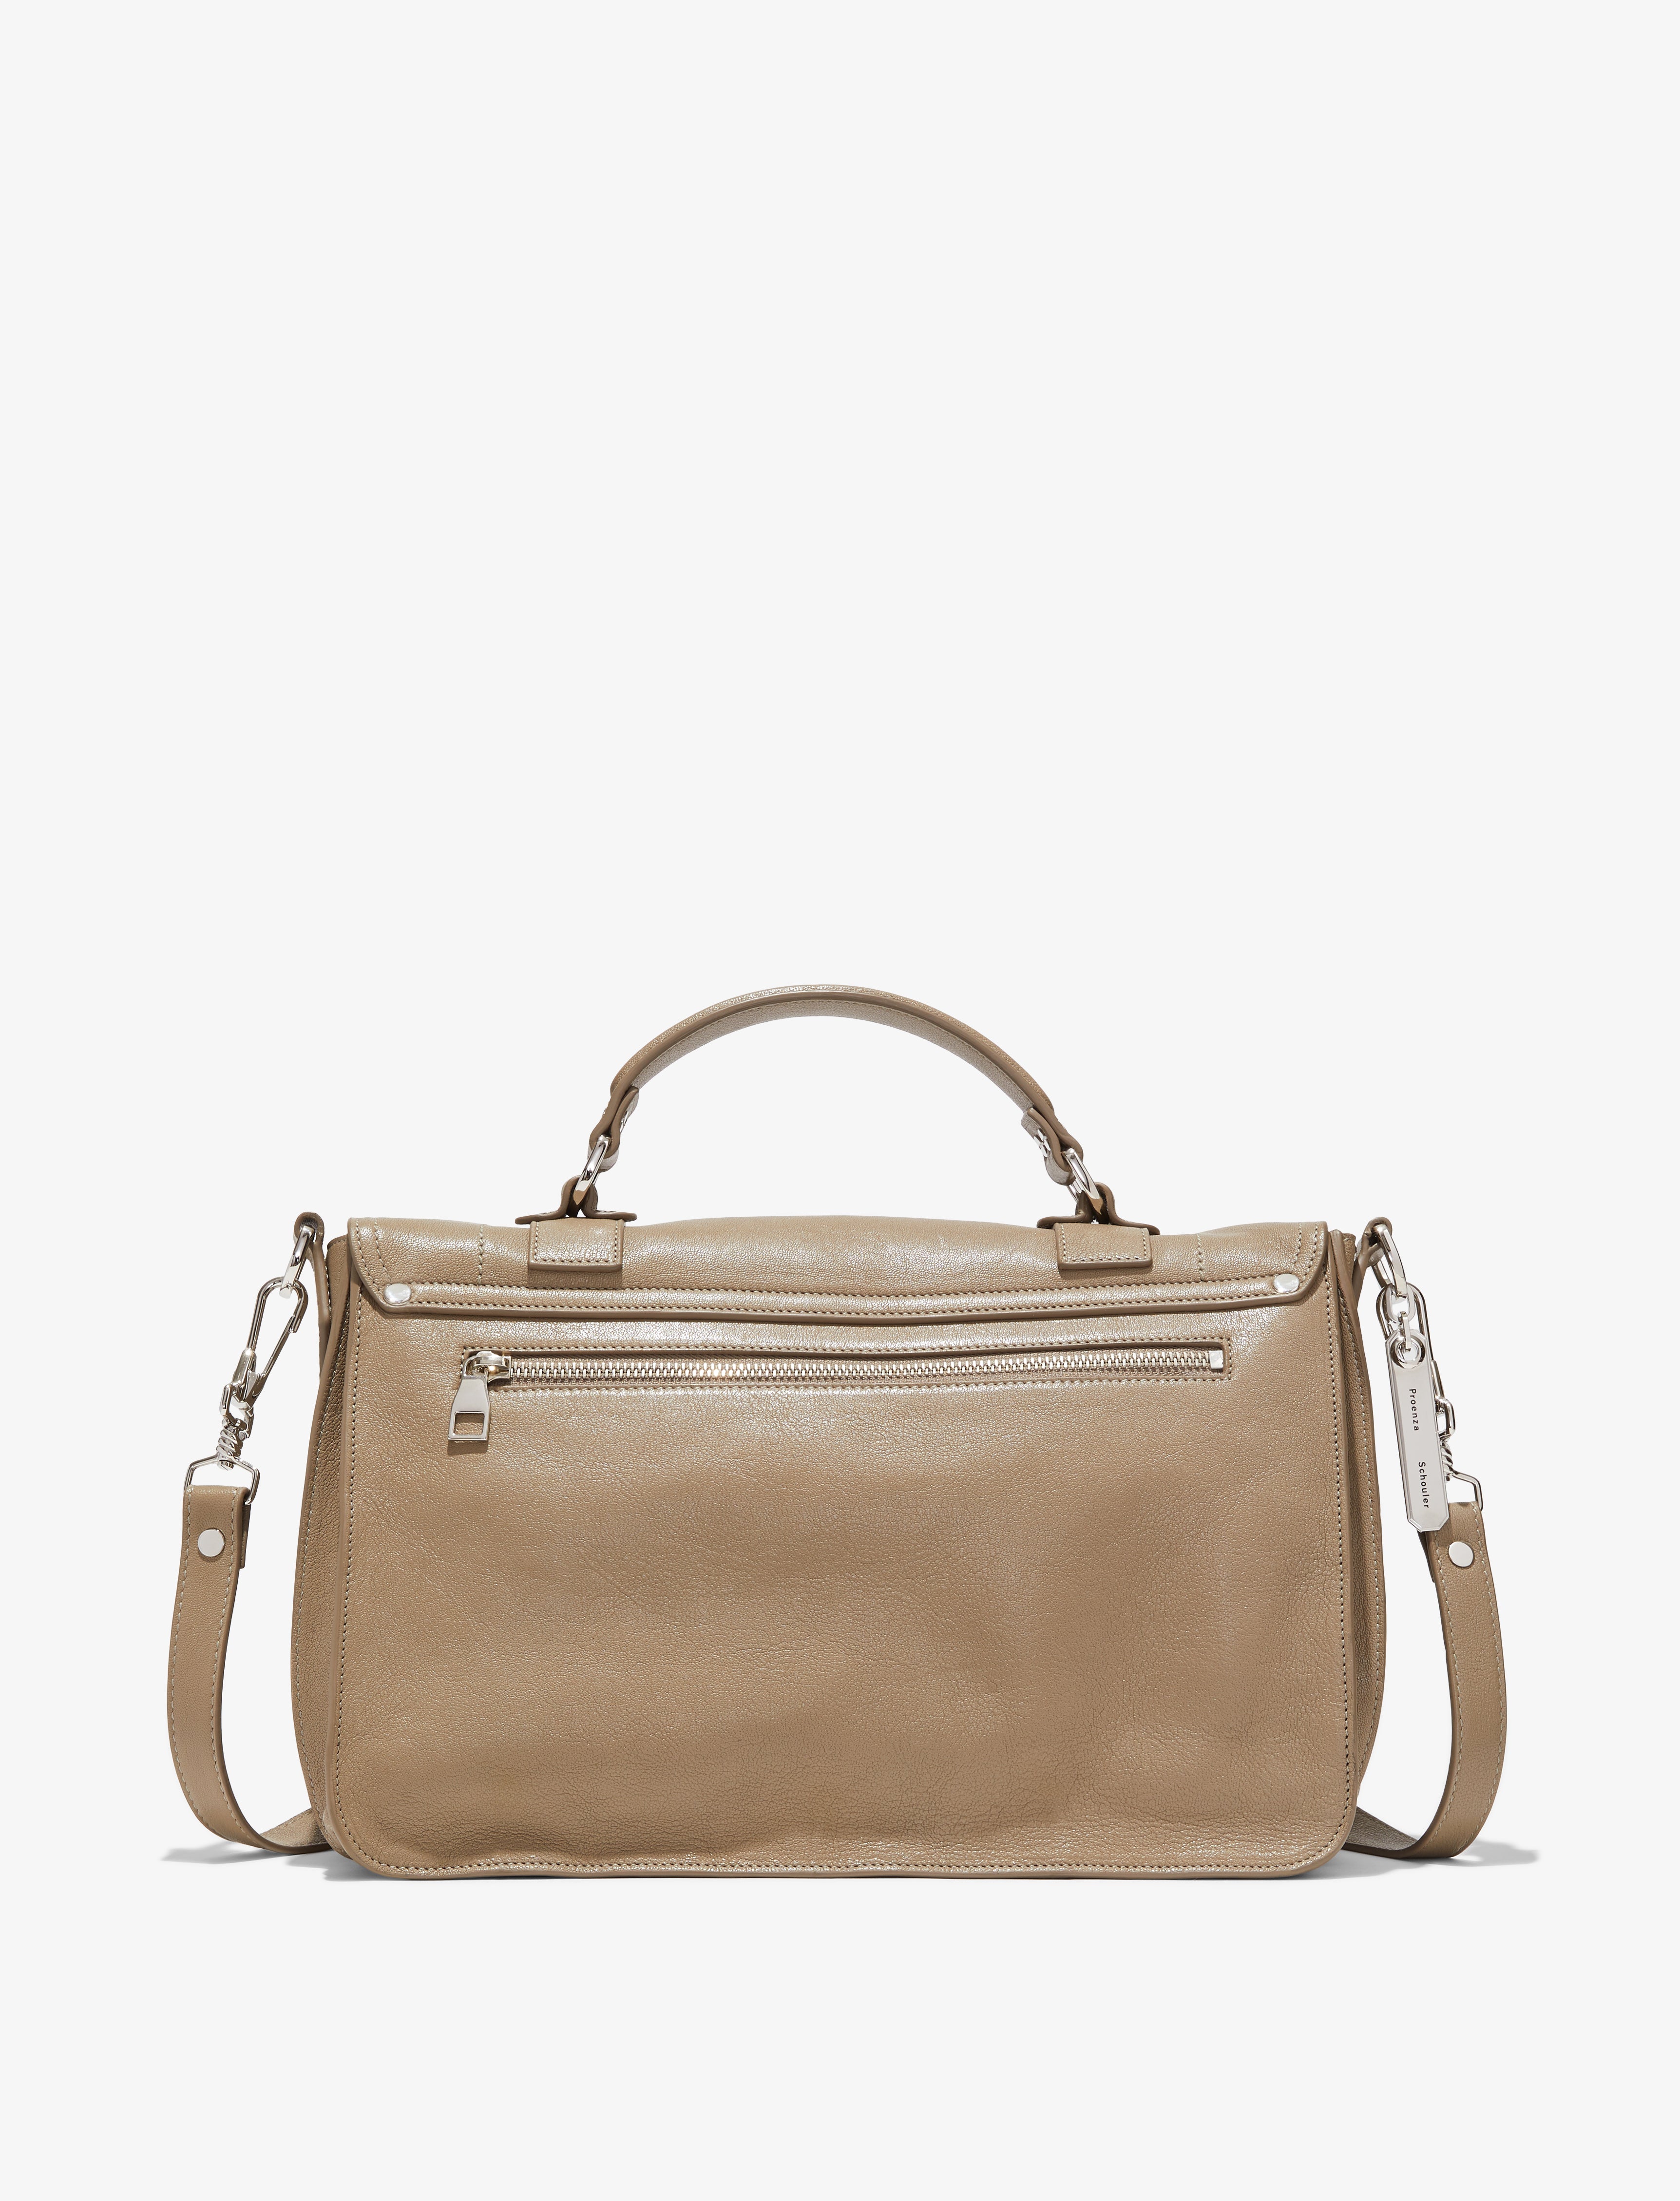 PS1 Medium Bag – Proenza Schouler